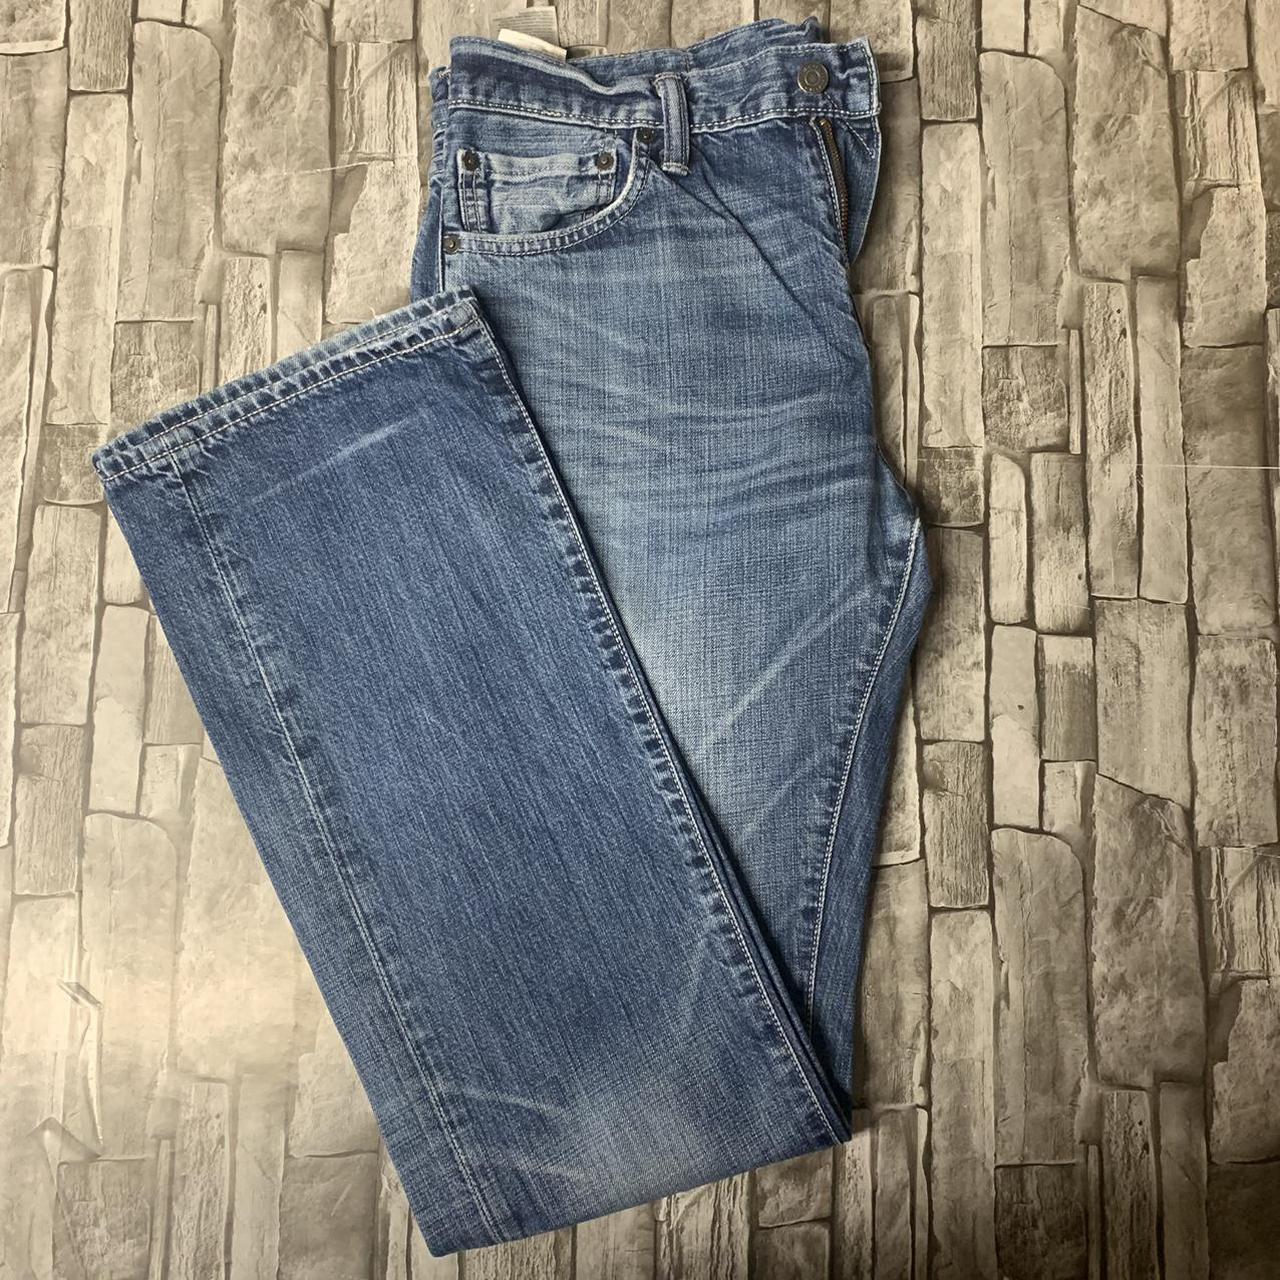 Men's Vintage Levi's 527 Style Blue Jeans W33 L34 -... - Depop